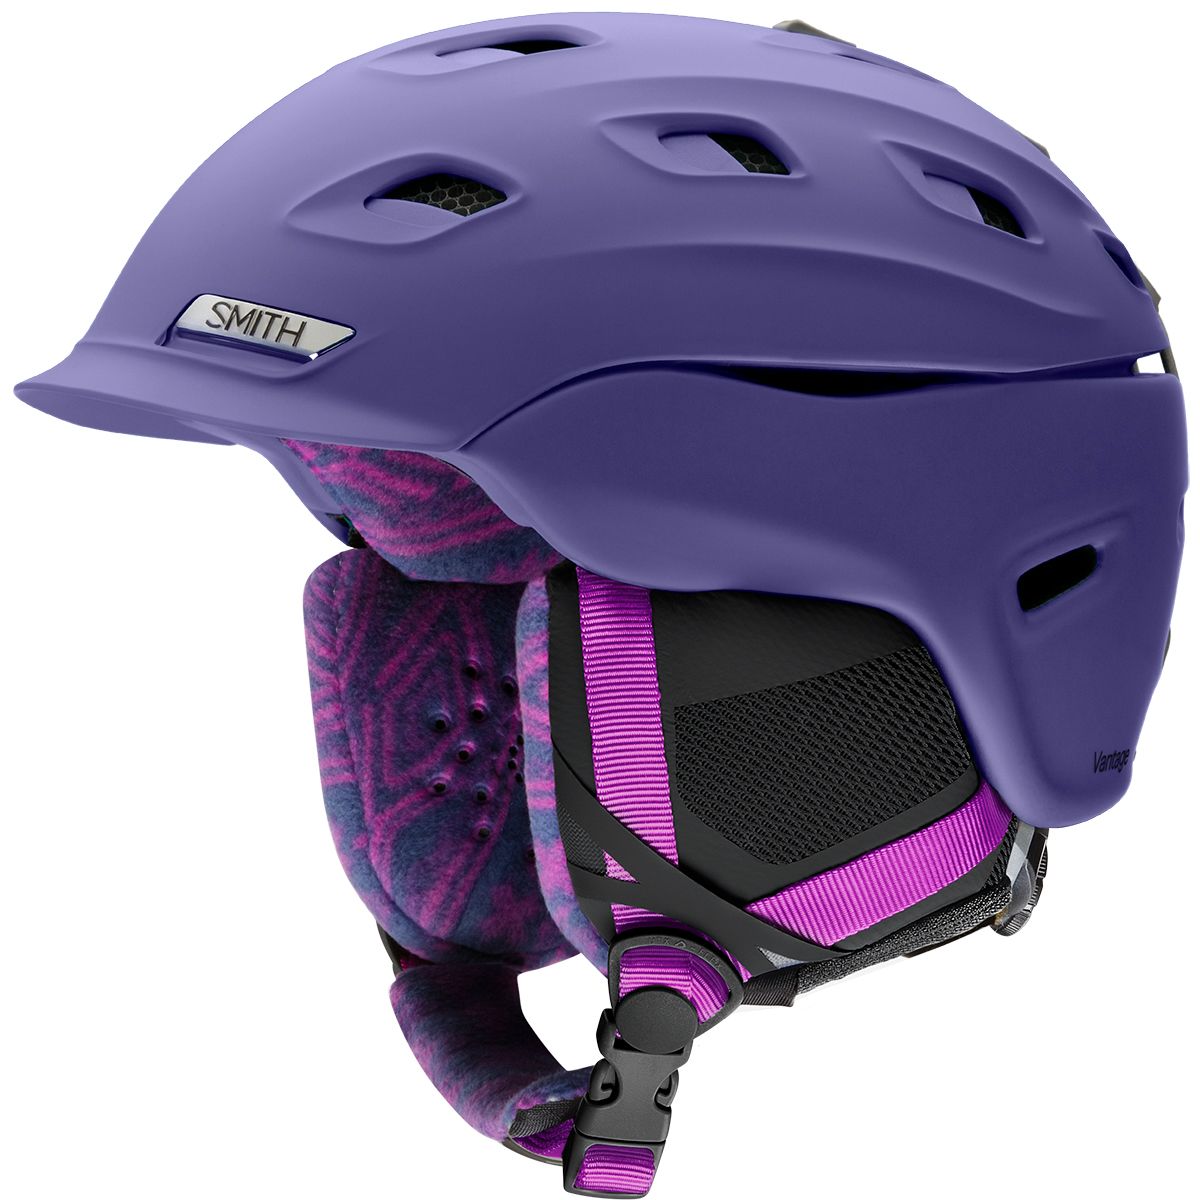 Smith Vantage Helmet - Women's Matte Dusty Lilac